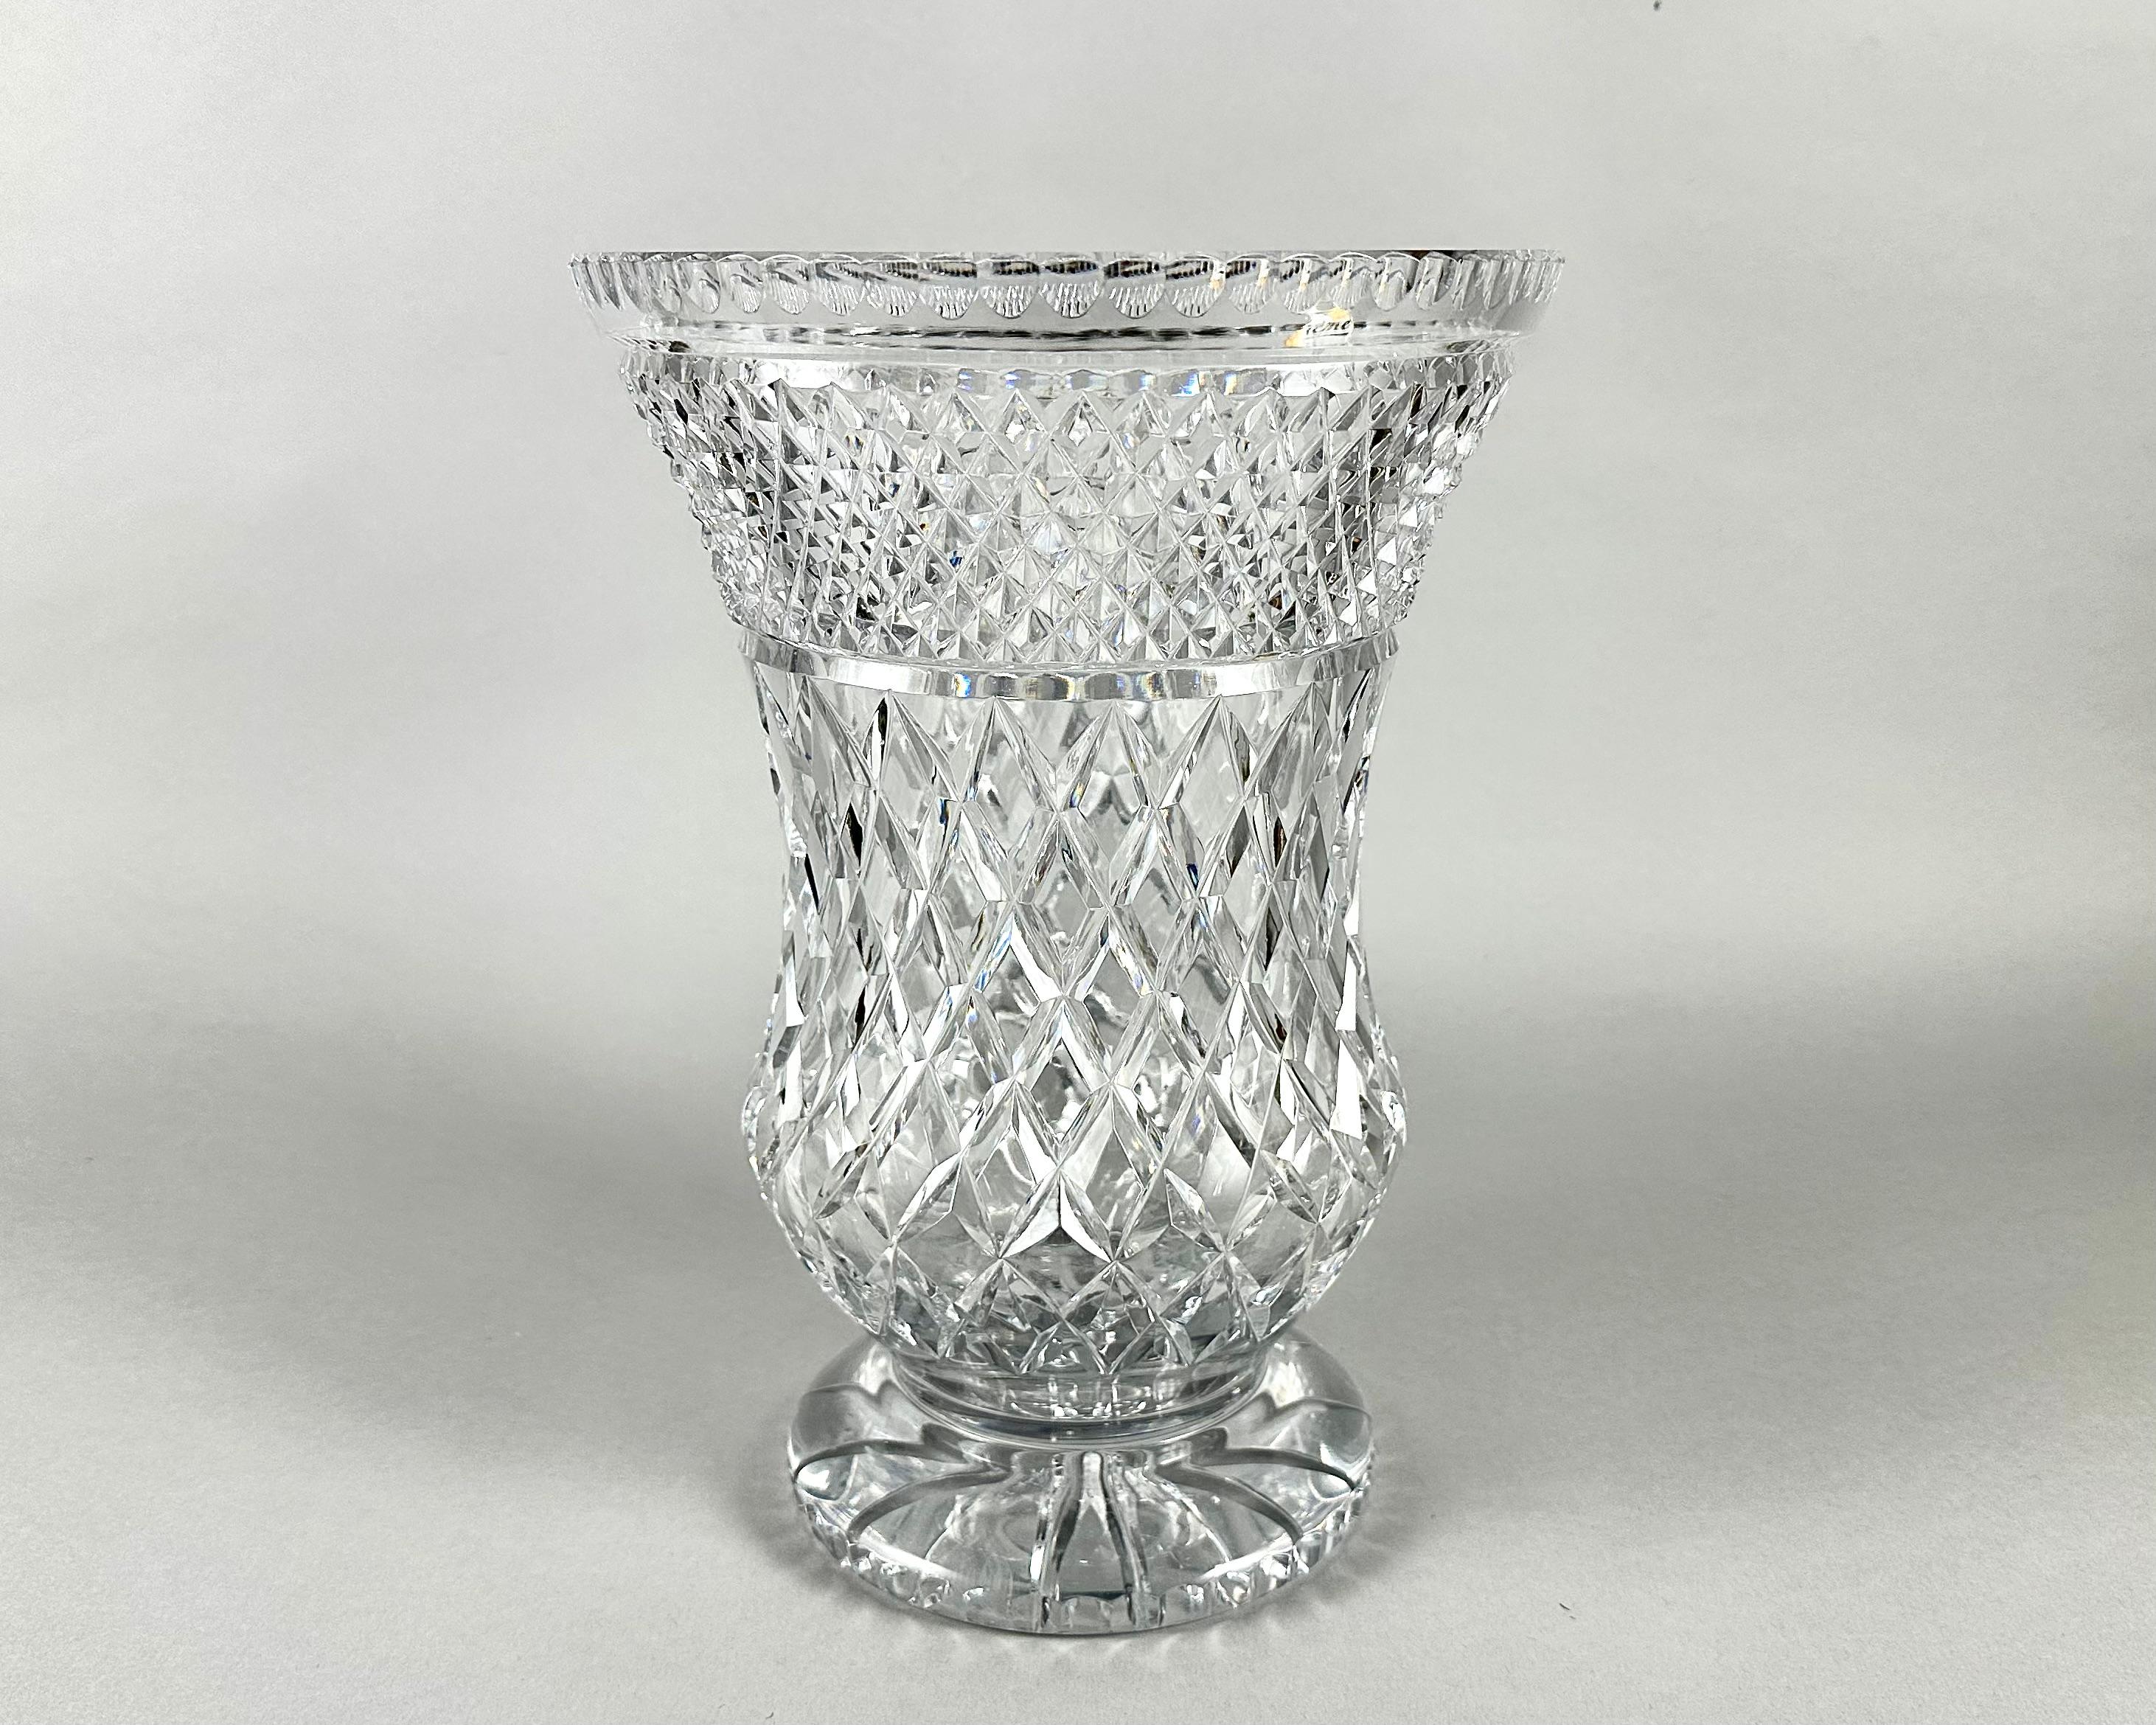 French Vase Large Crystal Decorative Vase Made Of Cut Crystal Vintage France 1950s For Sale